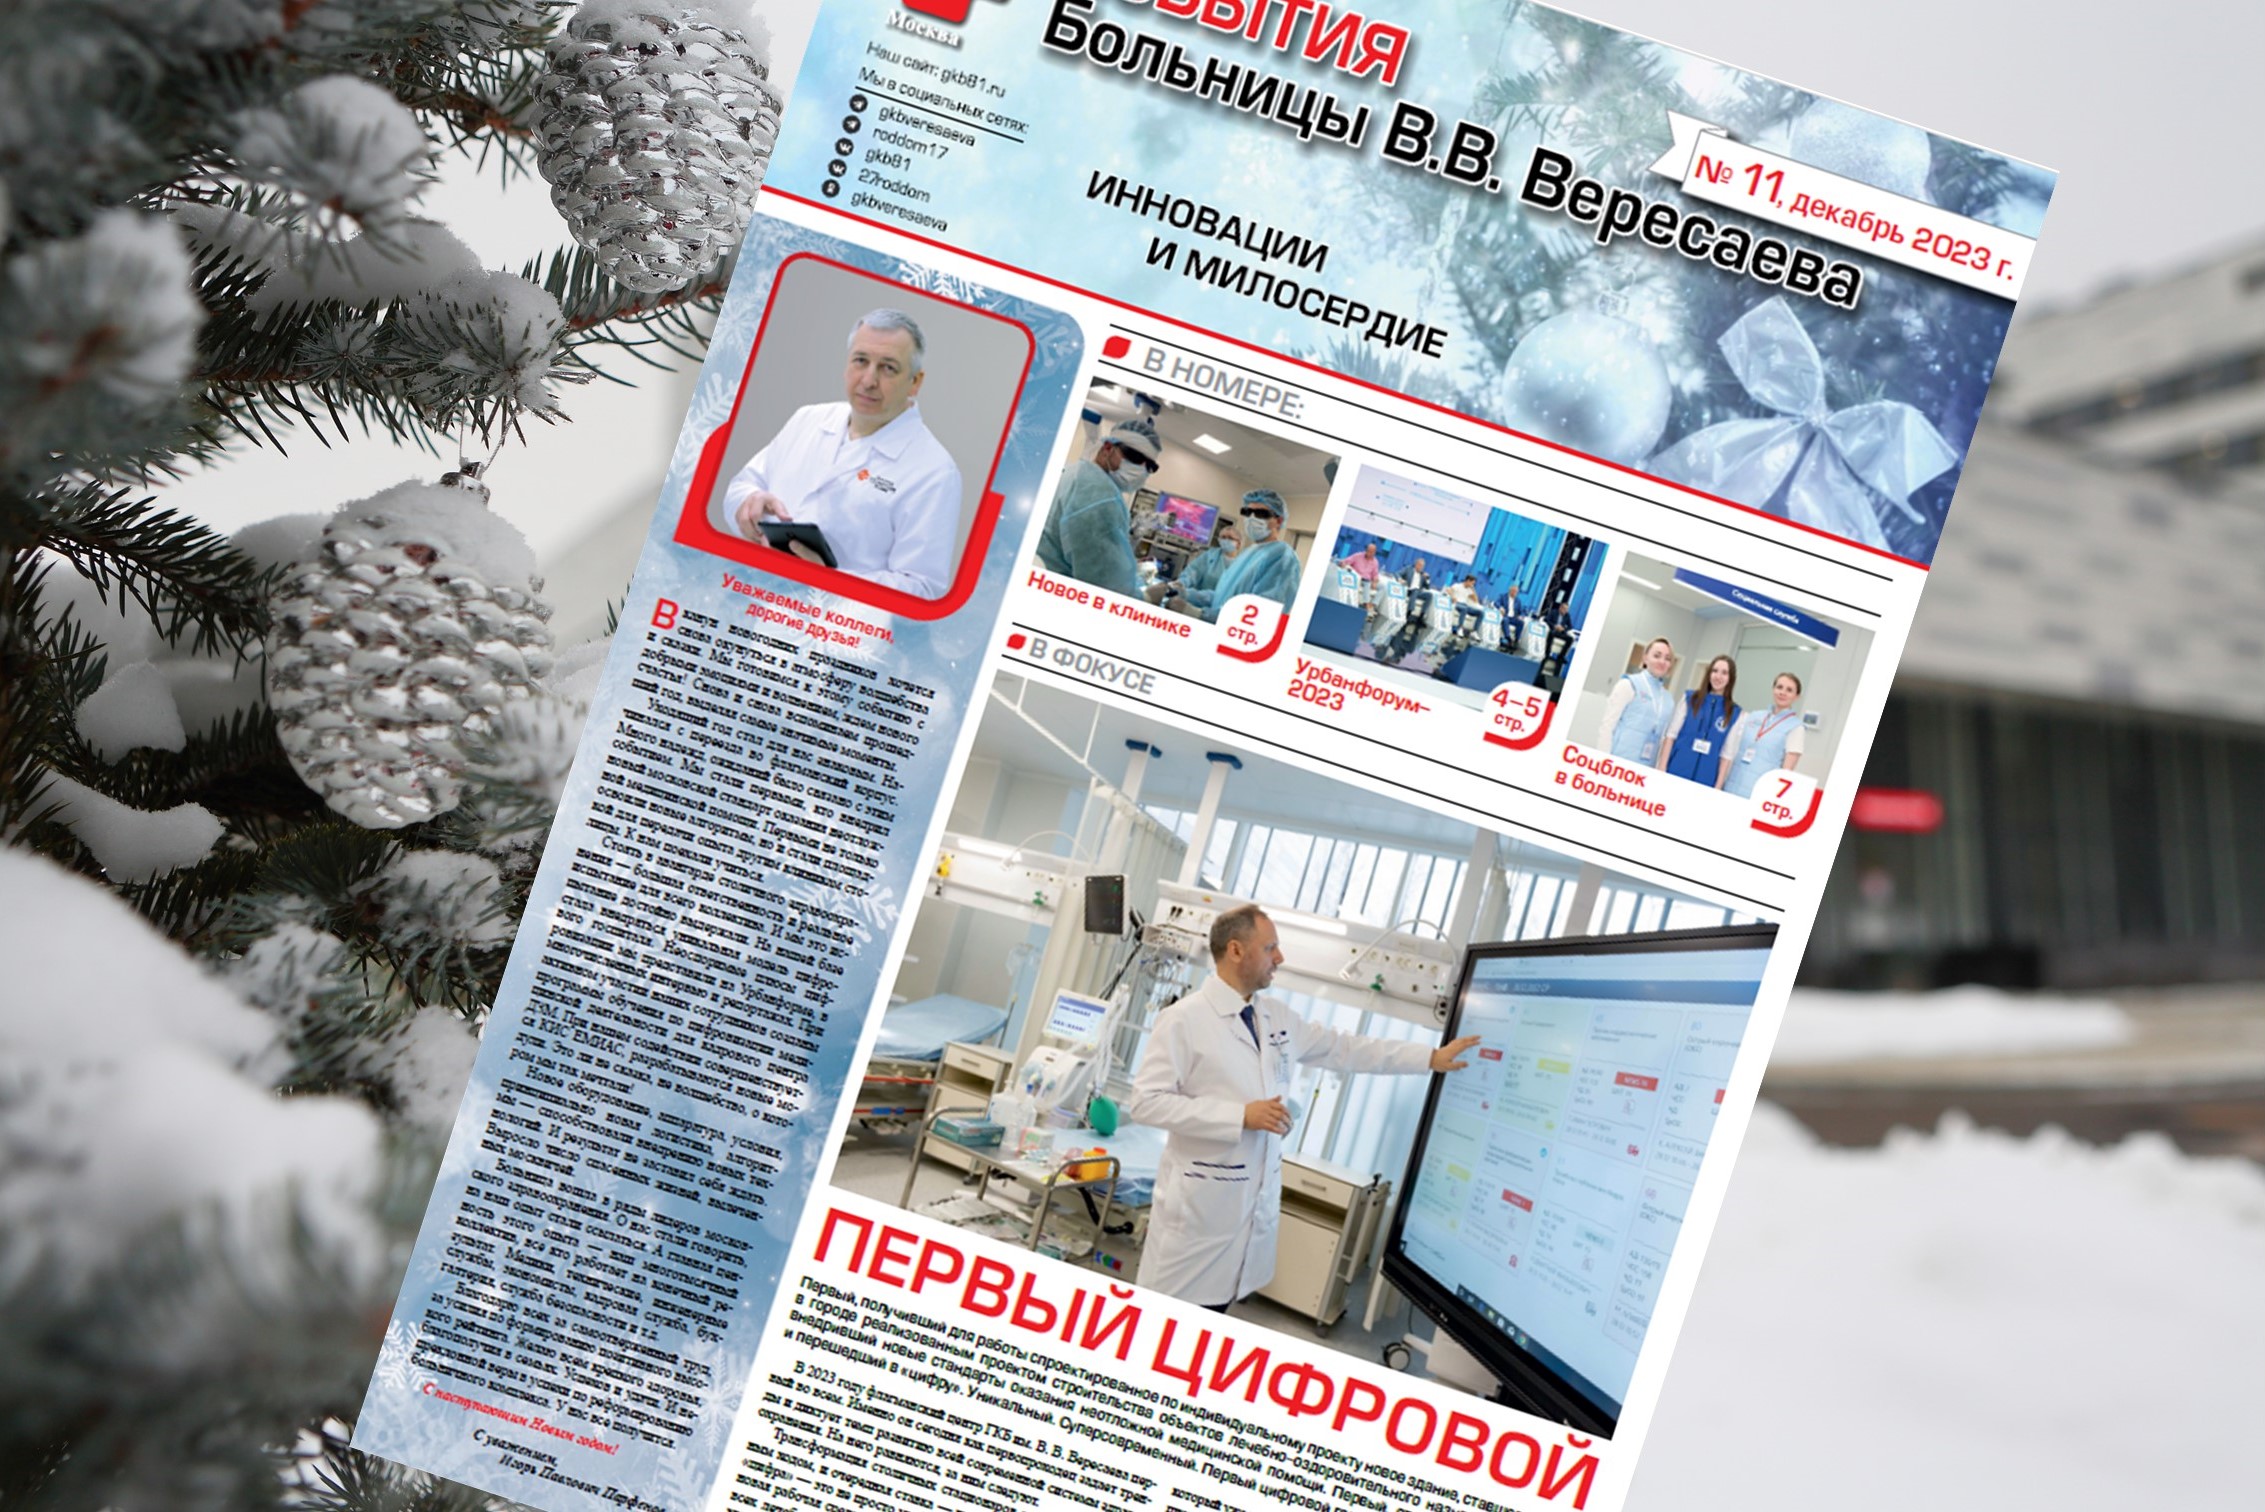 Одиннадцатый выпуск корпоративного издания «События больницы Вересаева» увидел свет